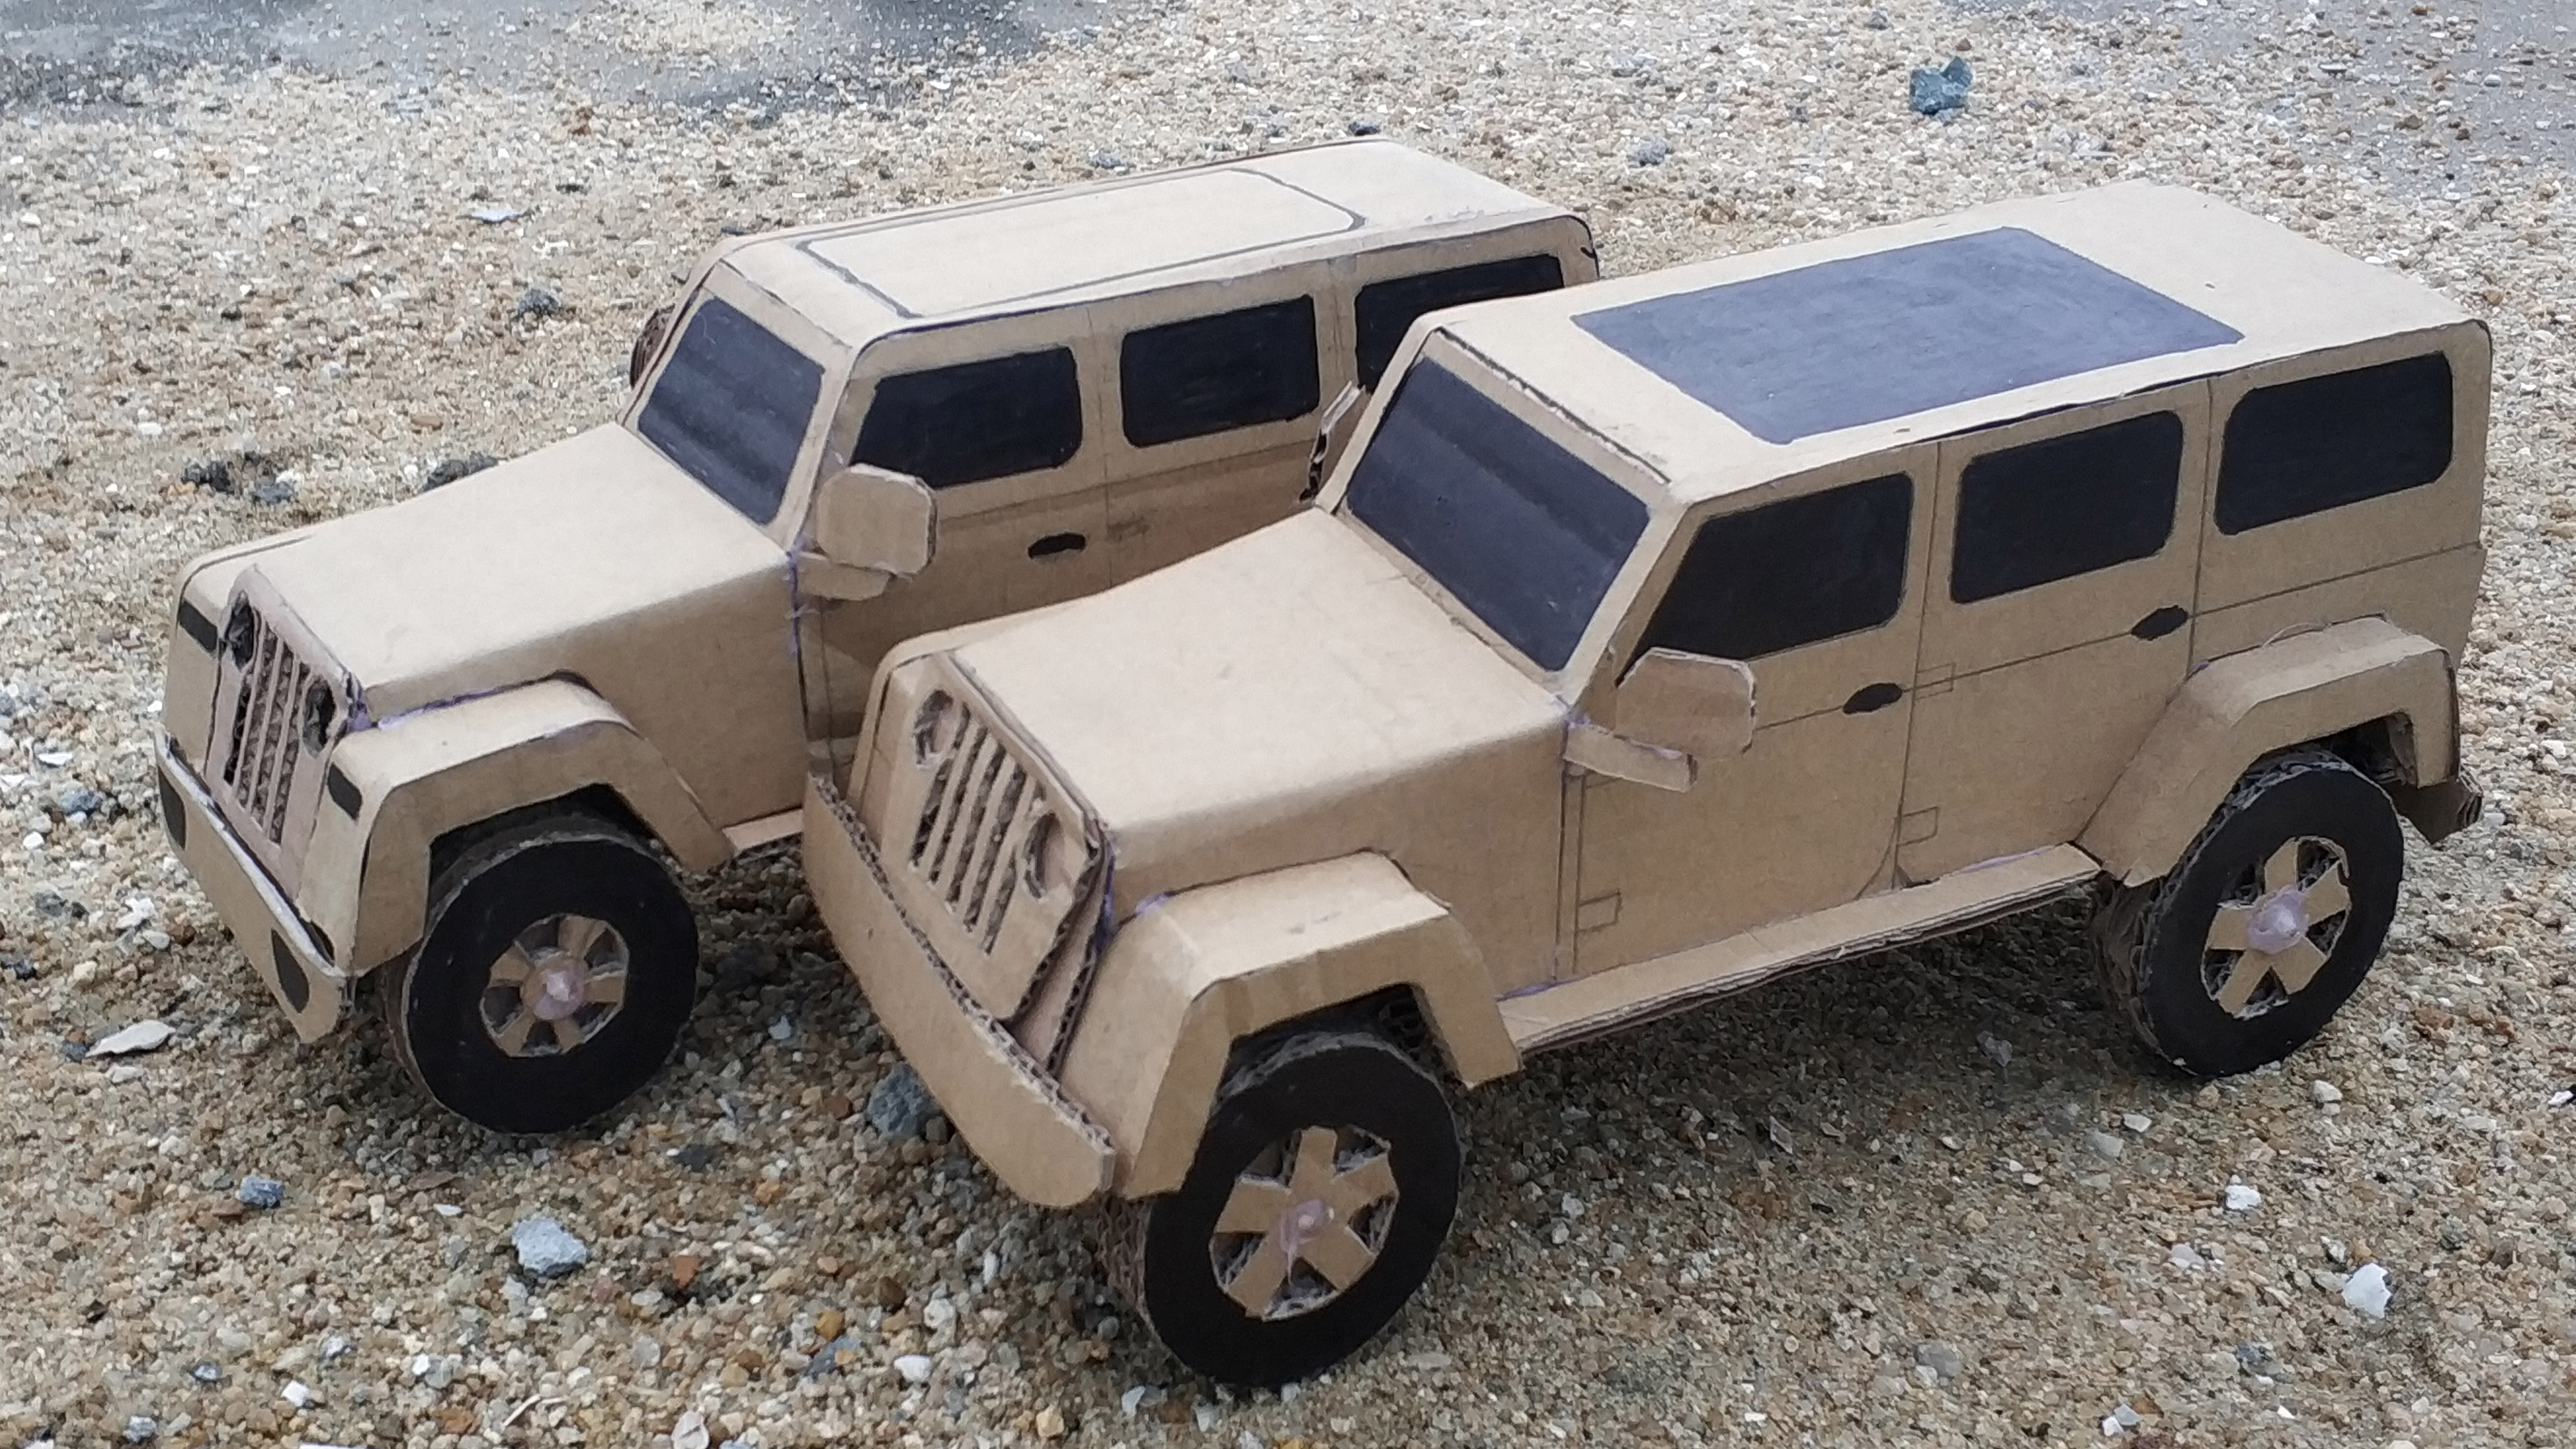 教你用纸箱diy制作jeep车 牧马人 sahara四门版汽车模型!